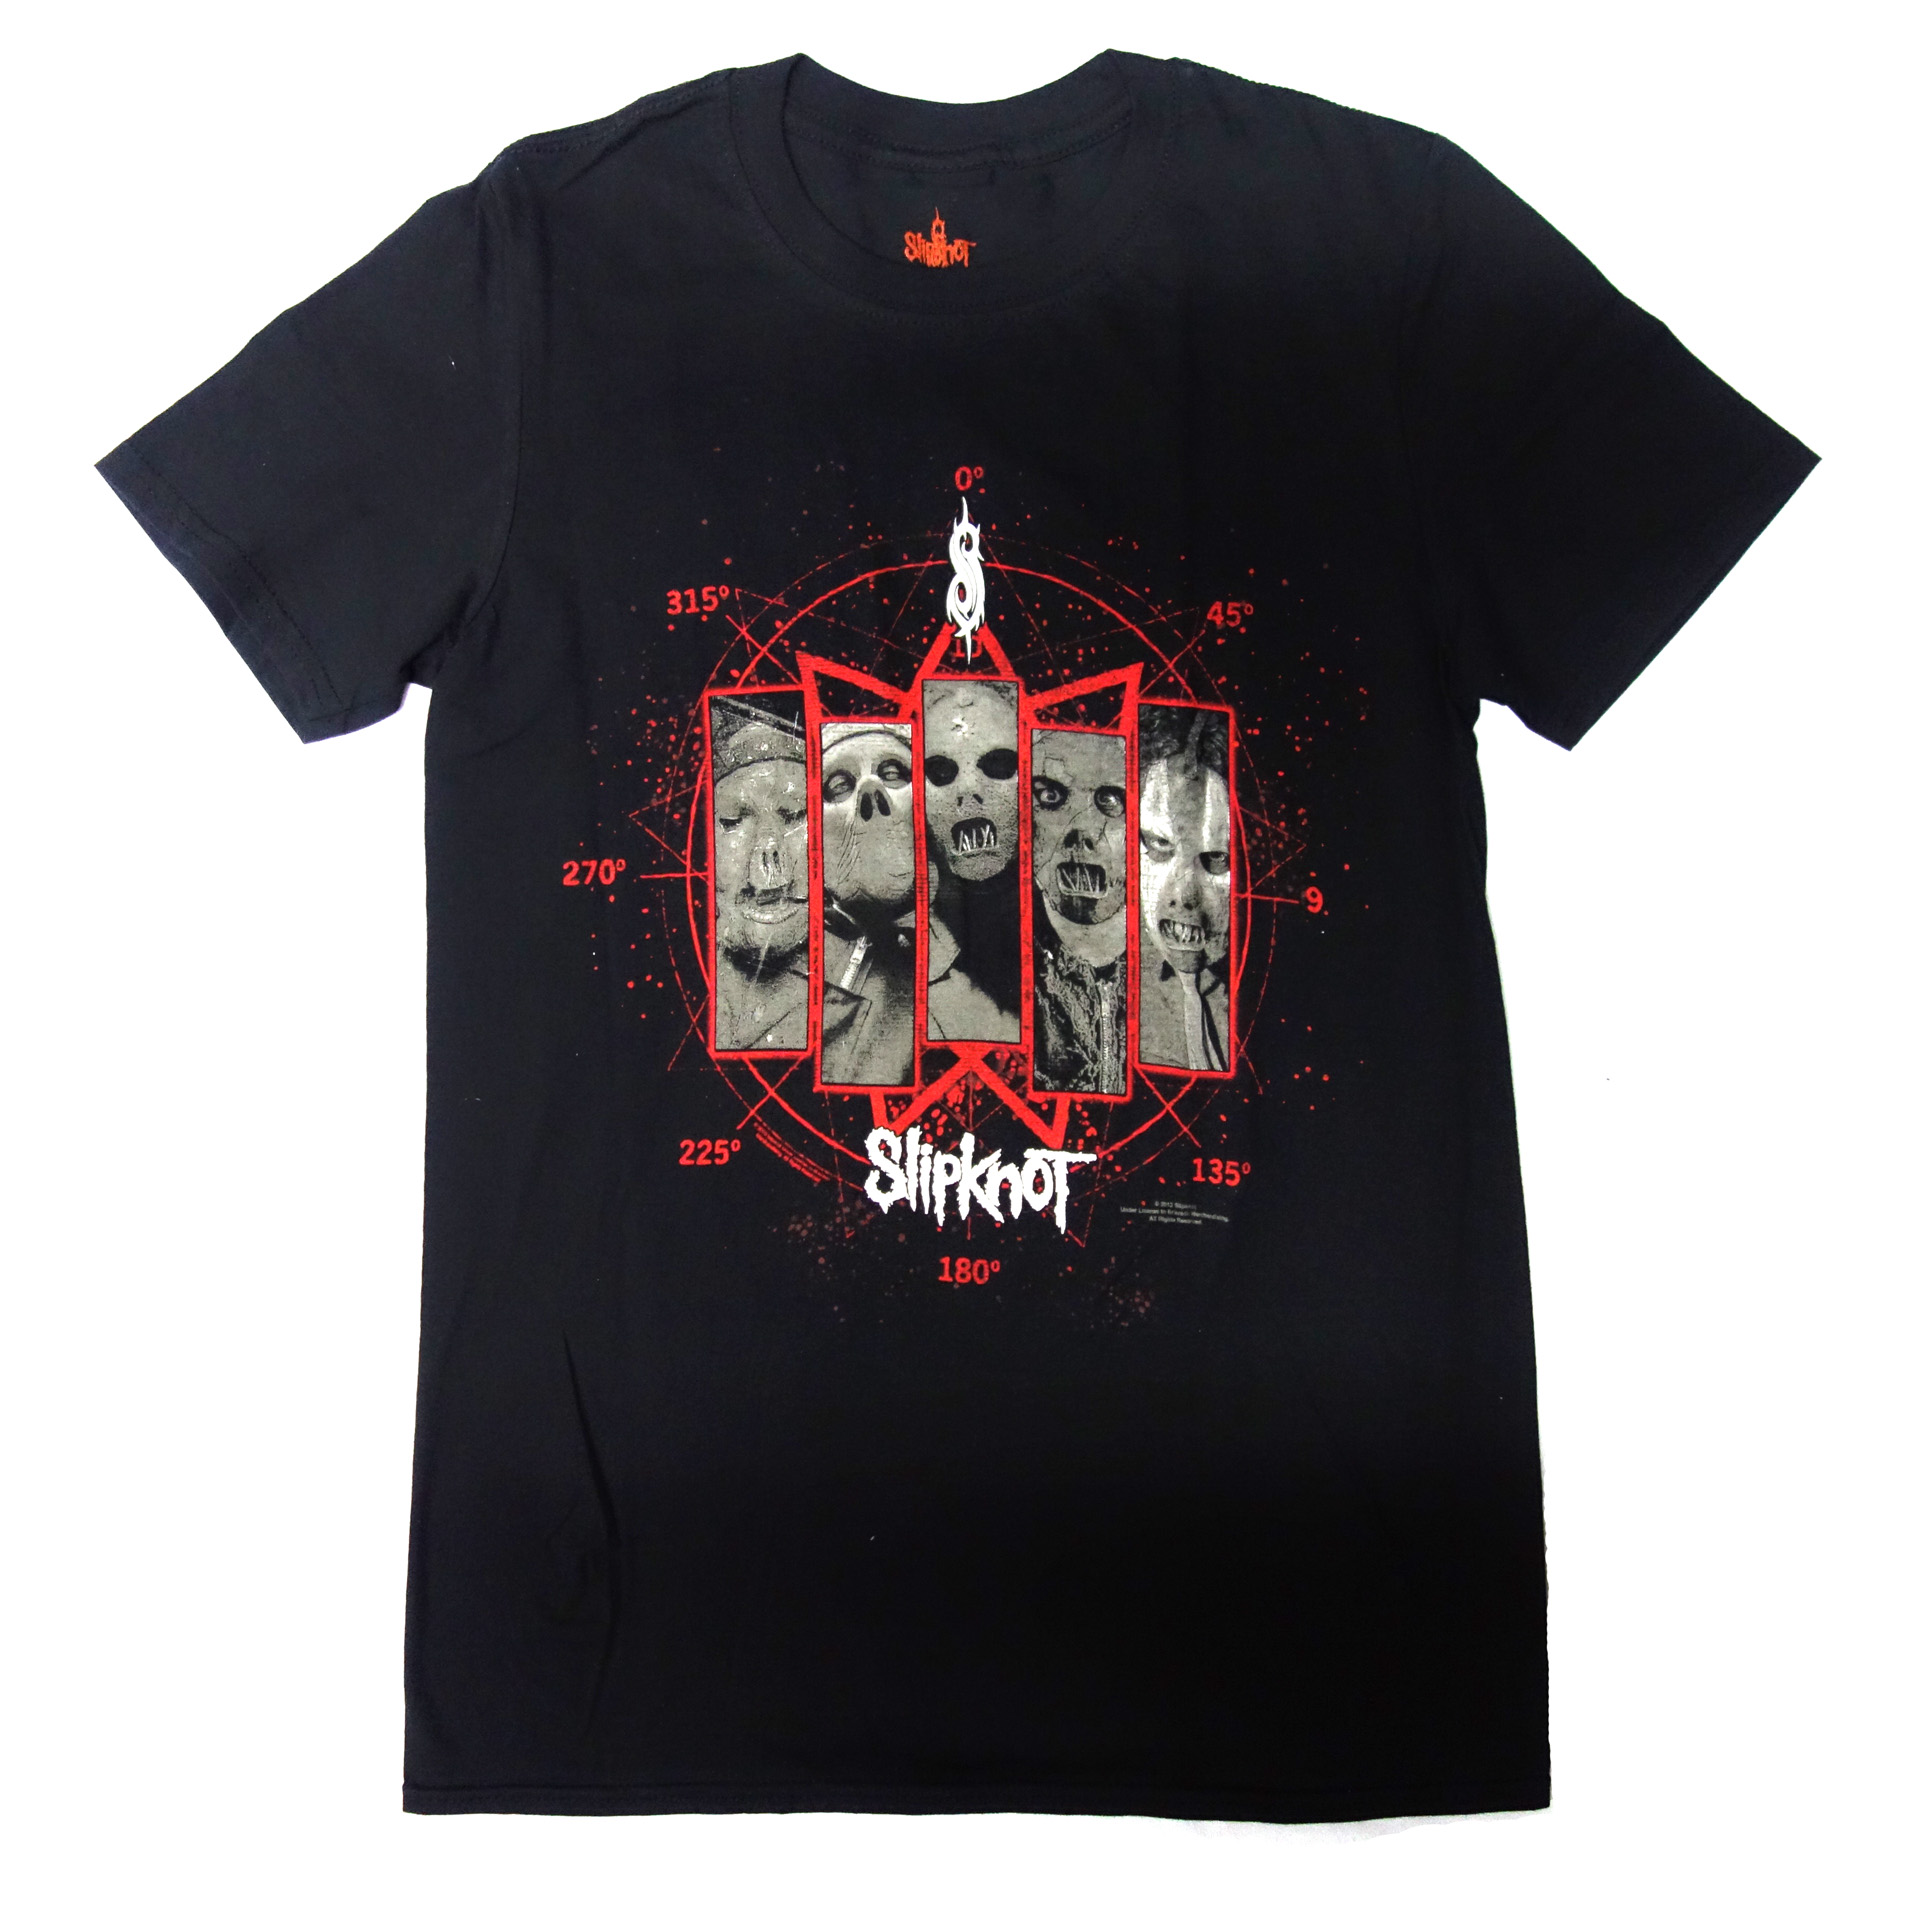 T-Shirt Slipknot Paul Gray